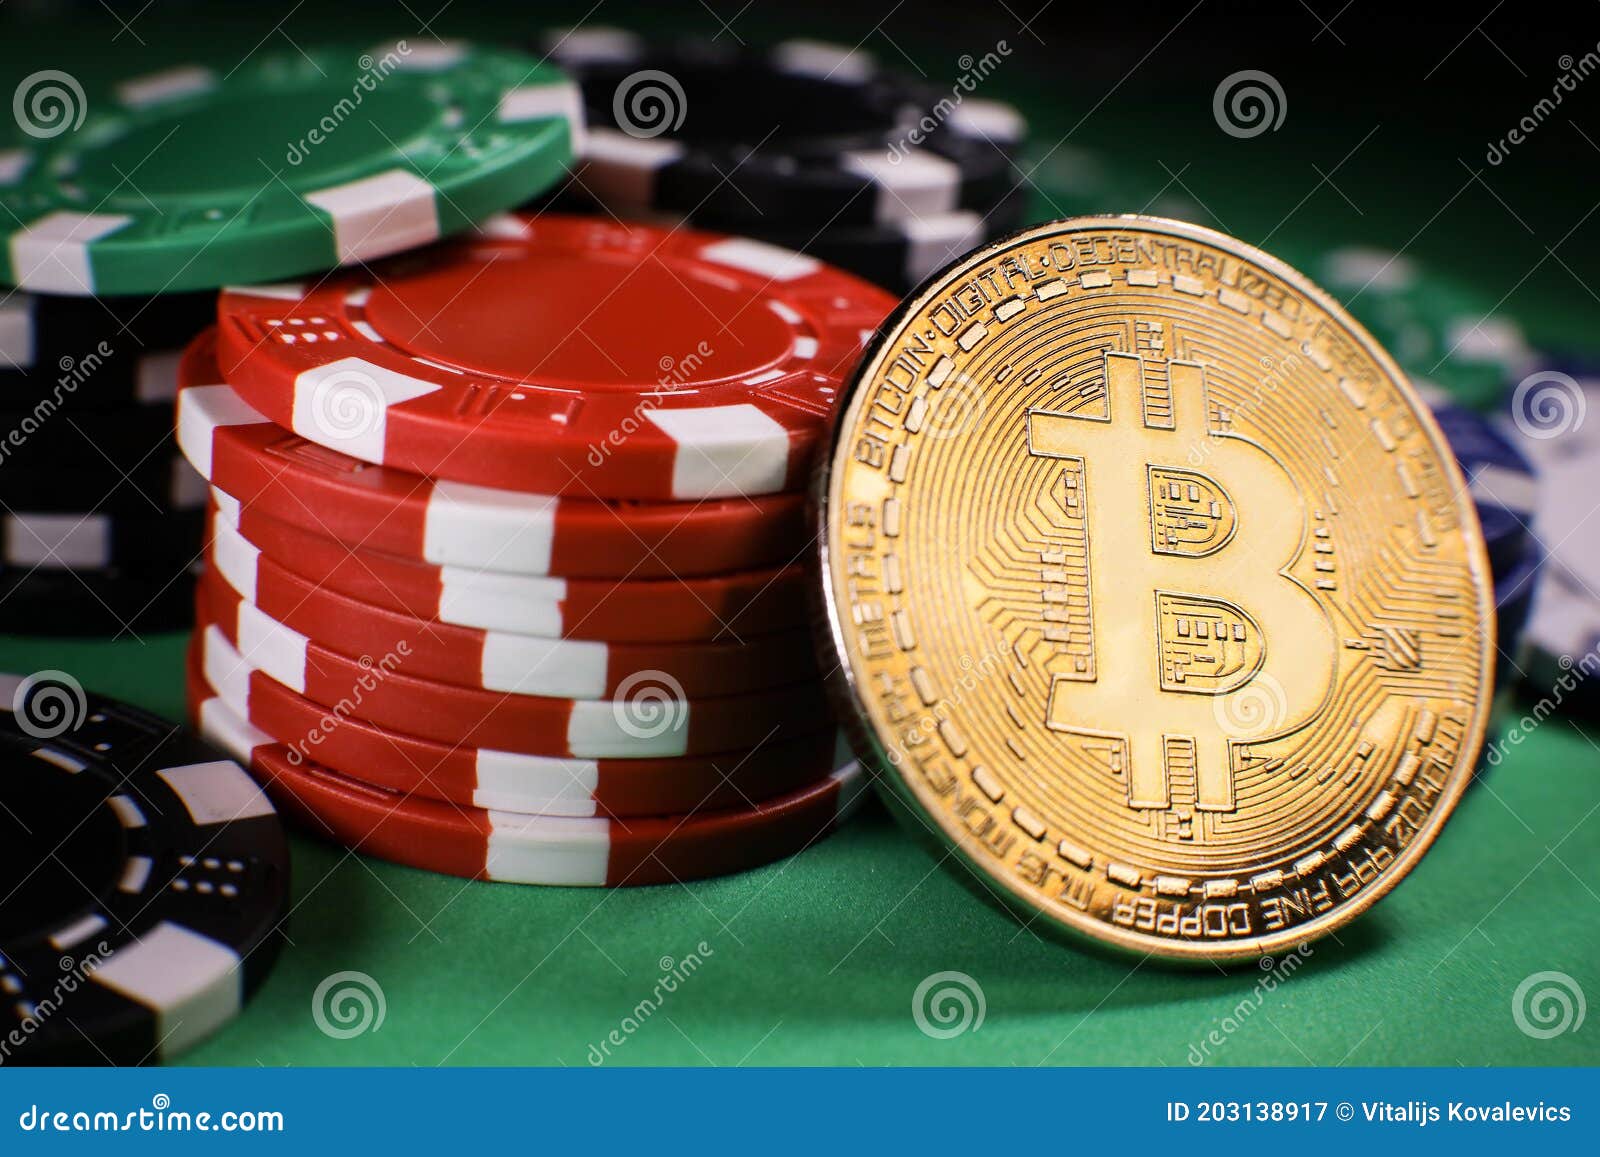 Kurzgeschichte: Die Wahrheit über Online Casinos mit Bitcoin